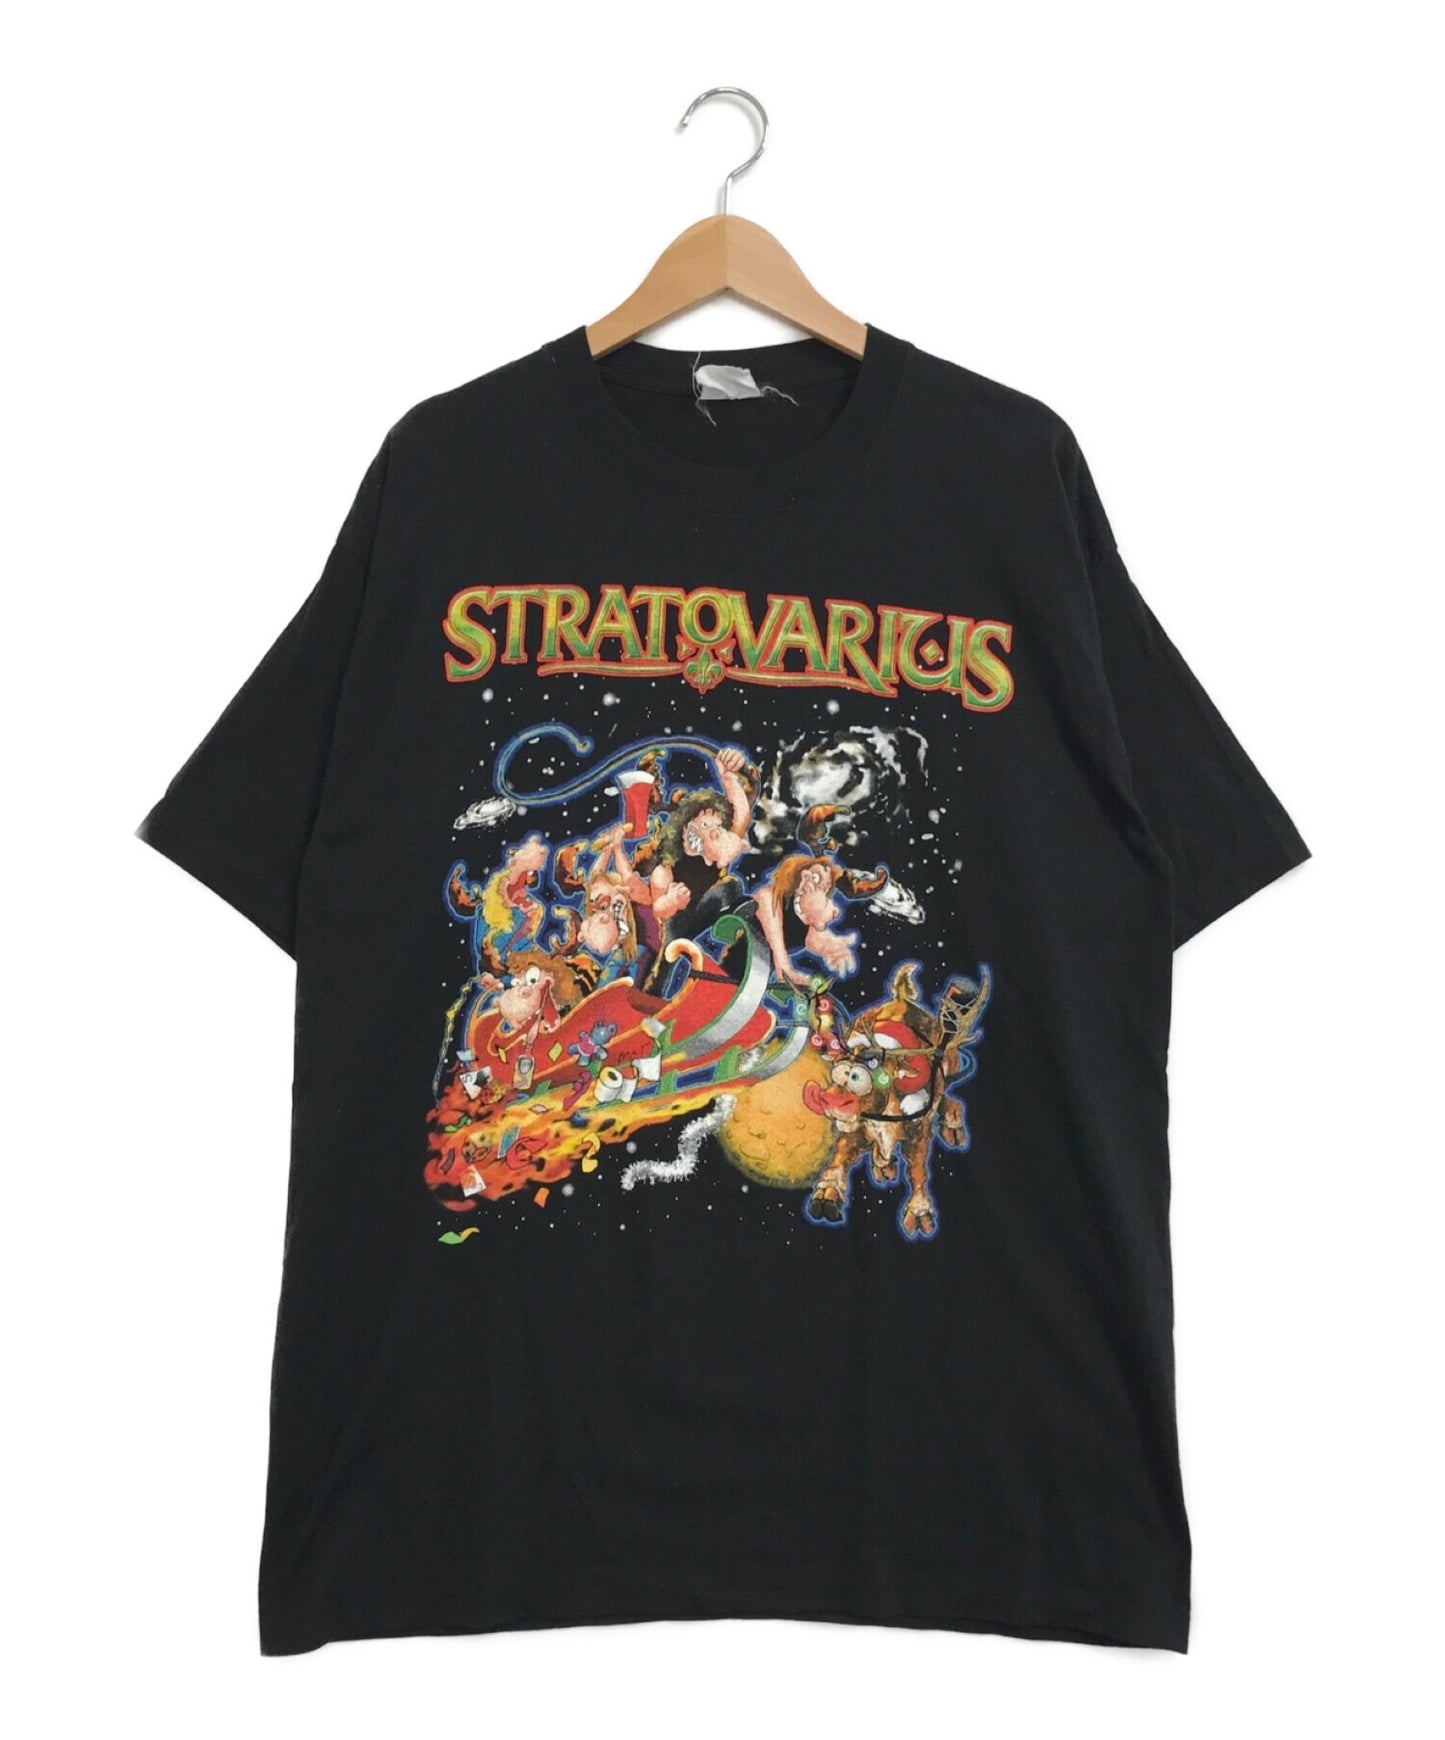 Stratovarius 밴드 티셔츠